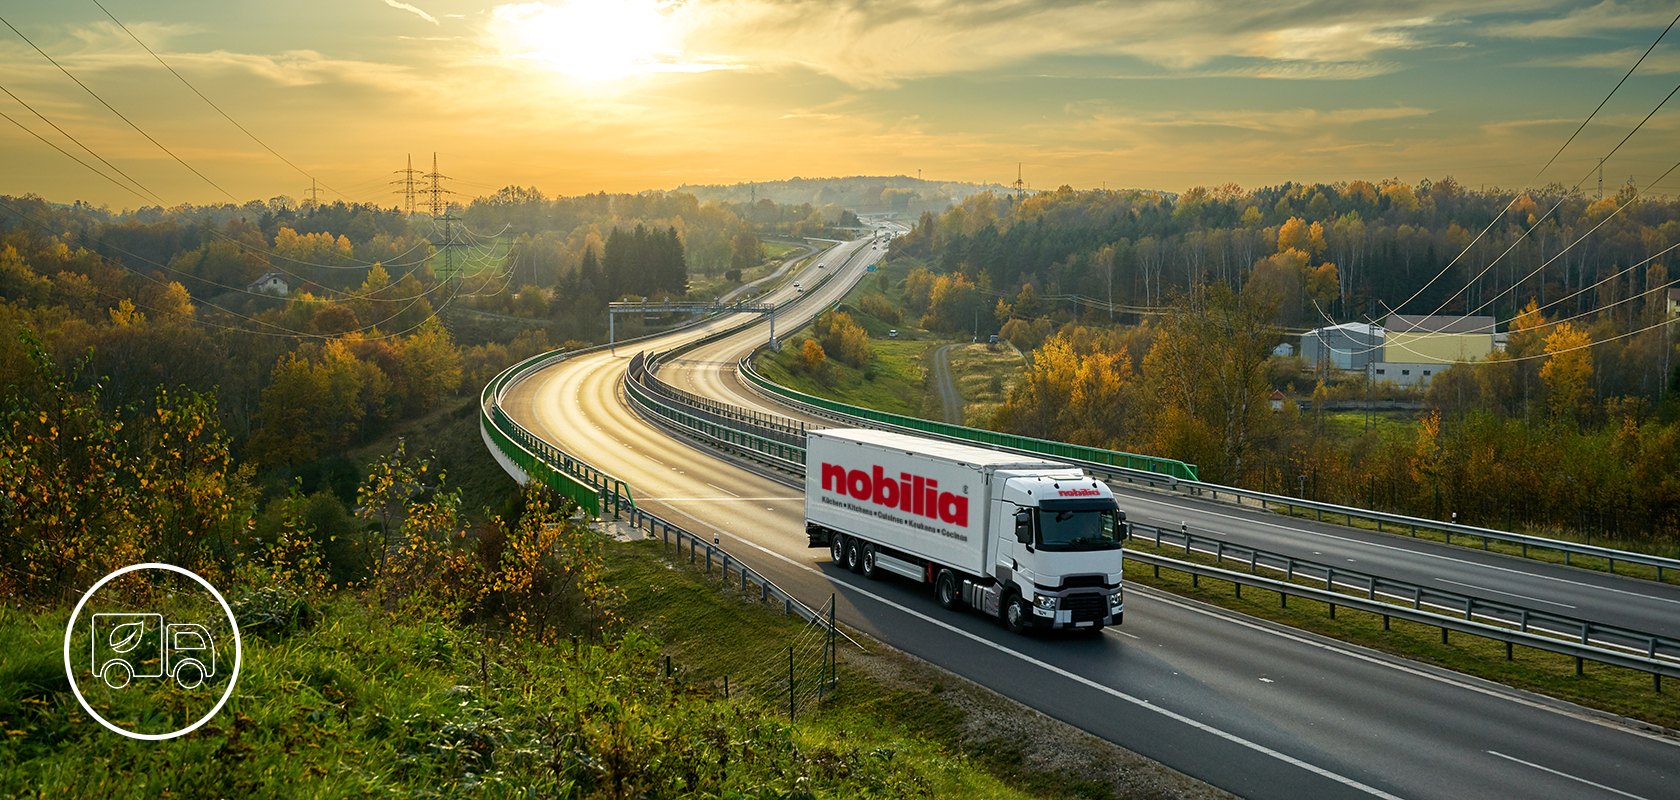 Un camión comercial de la marca "nobilia" viaja por una carretera sinuosa en medio de un vibrante paisaje otoñal con follaje y colinas ondulantes a lo lejos.